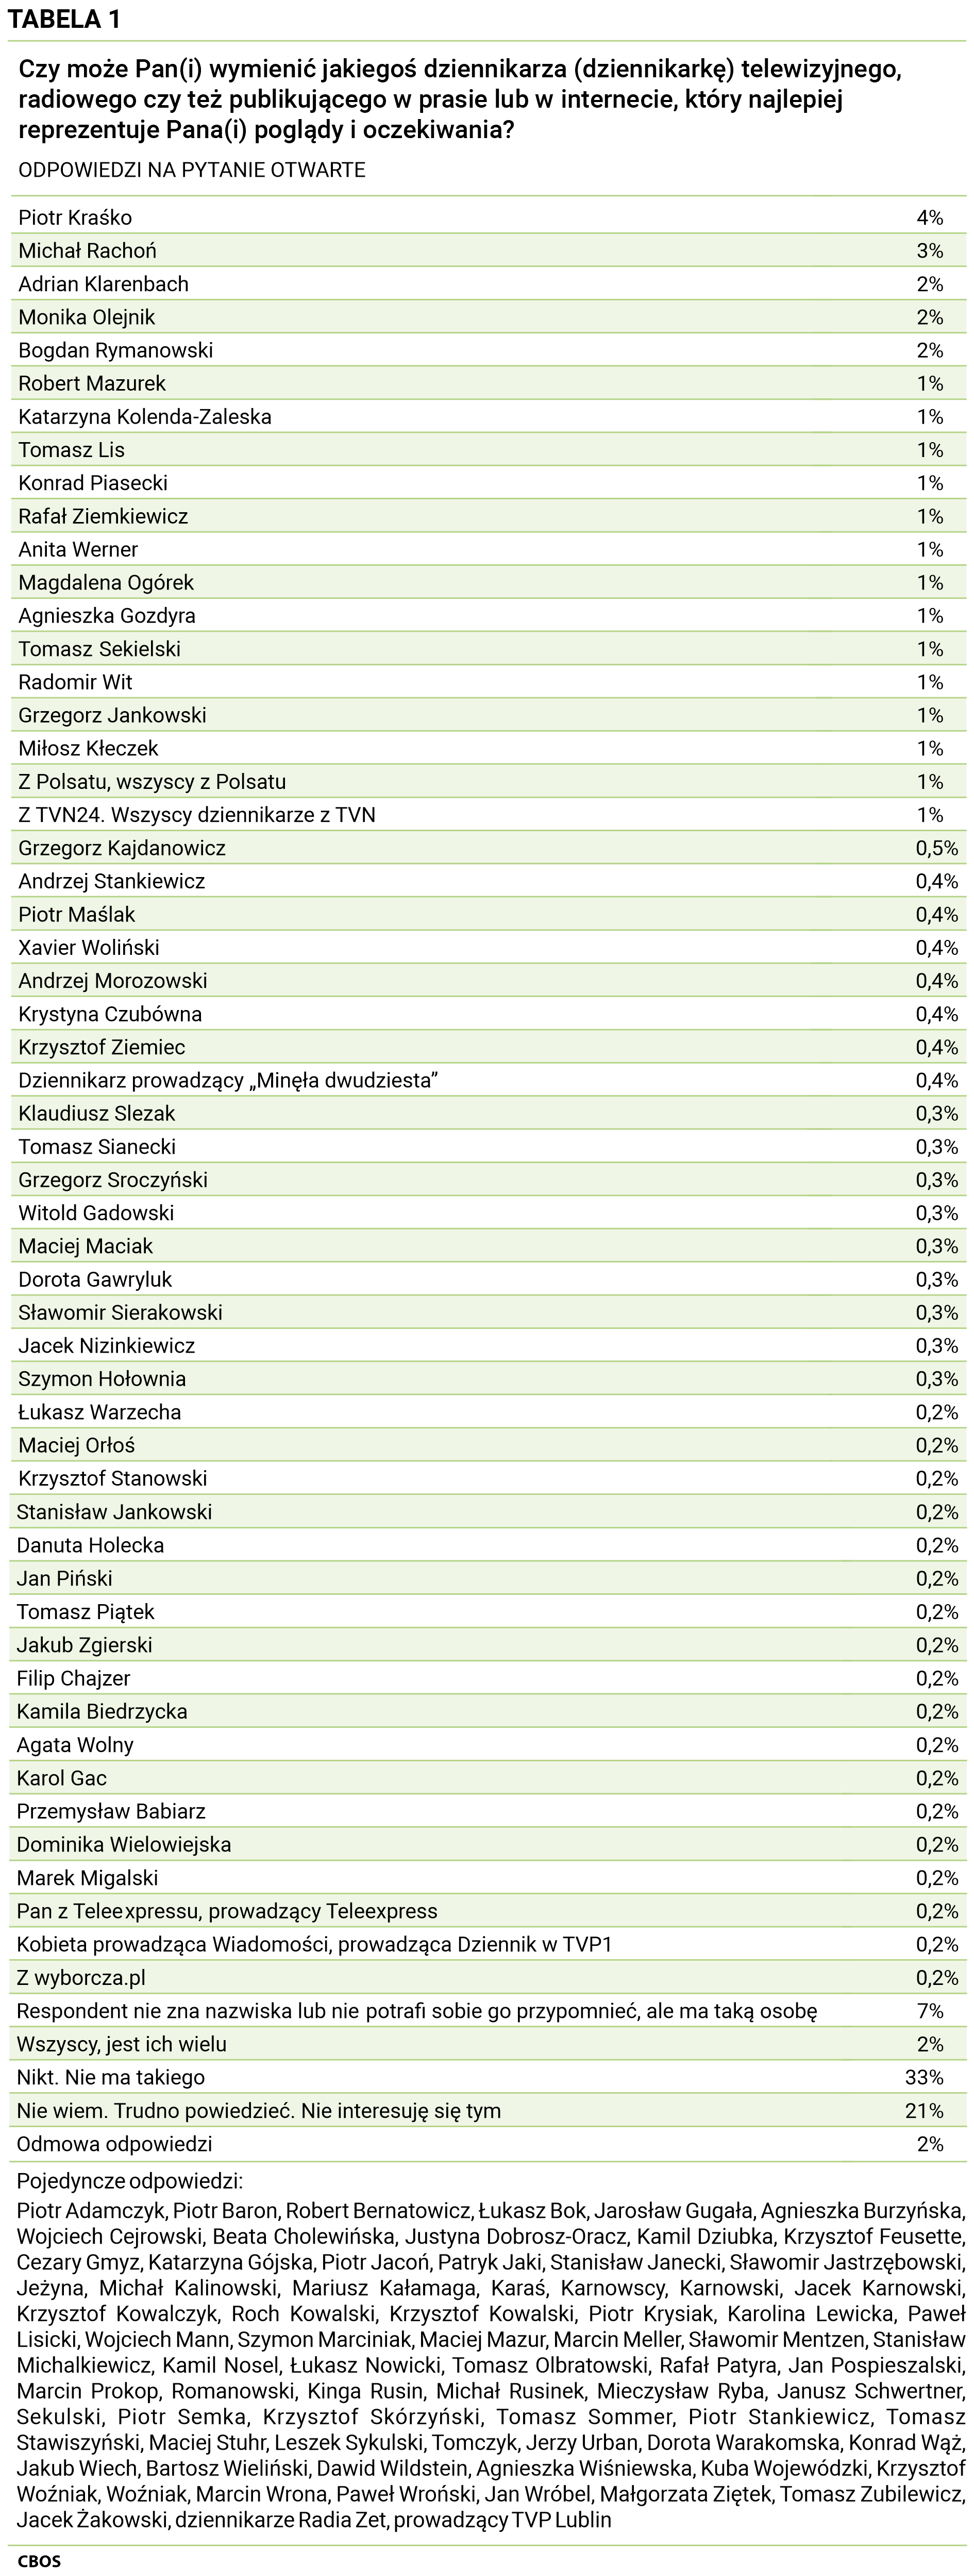 Tabela 1 Czy może Pan(Pani) wymienić jakiegoś dziennikarza (dziennikarkę) telewizyjnego, radiowego czy też publikującego w prasie lub w internecie, który najlepiej reprezentuje Pana(Pani) poglądy i oczekiwania? ODPOWIEDZI NA PYTANIE OTWARTE. Piotr Kraśko - 4%, Michał Rachoń - 3%, Adrian Klarenbach - 2%, Monika Olejnik - 2%, Bogdan Rymanowski - 2%, Robert Mazurek - 1 %, Katarzyna Kolenda-Zaleska - 1 %, Tomasz Lis - 1 %, Konrad Piasecki - 1 %, Rafał Ziemkiewicz - 1 %, Anita Werner - 1 %, Magdalena Ogórek - 1 %, Agnieszka Gozdyra - 1 %, Tomasz Sekielski - 1 %, Radomir Wit - 1 %, Grzegorz Jankowski - 1%, Miłosz Kłeczek - 1 %, Z Polsatu, wszyscy z Polsatu - 1 %, Z TVN24, Wszyscy dziennikarze z TVN - 1 %, Grzegorz Kajdanowicz - 0,5%, Andrzej Stankiewicz - 0,4%, Piotr Maślak - 0,4%, Xavier Woliński - 0,4%, Andrzej Morozowski - 0,4%, Krystyna Czubówna - 0,4%, Krzysztof Ziemiec - 0,4%, Dziennikarz prowadzący „Minęła dwudziesta” - 0,4%, Klaudiusz Slezak - 0,3%, Tomasz Sianecki - 0,3%, Grzegorz Sroczyński - 0,3%, Witold Gadowski - 0,3%, Maciej Maciak - 0,3%, Dorota Gawryluk - 0,3%, Sławomir Sierakowski - 0,3%, Jacek Nizinkiewicz - 0,3%, Szymon Hołownia - 0,3%, Łukasz Warzecha - 0,2 %, Maciej Orłoś - 0,2 %, Krzysztof Stanowski - 0,2 %, Stanisław Jankowski - 0,2 %, Danuta Holecka - 0,2 %, Jan Piński - 0,2 %, Tomasz Piątek - 0,2 %, Jakub Zgierski - 0,2 %, Filip Chajzer - 0,2 %, Kamila Biedrzycka - 0,2 %, Agata Wolny - 0,2%, Karol Gac - 0,2 %, Przemysław Babiarz - 0,2 %, Dominika Wielowiejska - 0,2 %, Marek Migalski - 0,2 %, Pan z Teleexpressu, prowadzący Teleexpress - 0,2 %, Kobieta prowadząca Wiadomości, prowadząca Dziennik w TVP 1 - 0,2%, Z wyborcza.pl - 0,2%, Respondent nie zna nazwiska lub nie potrafi sobie go przypomnieć, ale ma taką osobę - 7%, Wszyscy, jest ich wielu - 2%, Nikt, Nie ma takiego - 33%, Nie wiem, Trudno powiedzieć, Nie interesuję się tym - 21%, Odmowa odpowiedzi - 2%. Pojedyncze odpowiedzi: Piotr Adamczyk, Piotr Baron, Robert Bernatowicz, Łukasz Bok, Jarosław Gugała, Agnieszka Burzyńska, Wojciech Cejrowski, Beata Cholewińska, Justyna Dobrosz-Oracz, Kamil Dziubka, Krzysztof Feusette, Cezary Gmyz, Katarzyna Gójska, Piotr Jacoń, Patryk Jaki, Stanisław Janecki, Sławomir Jastrzębowski, Jeżyna, Michał Kalinowski, Mariusz Kałamaga, Karaś, Karnowscy, Karnowski, Jacek Karnowski, Krzysztof Kowalczyk, Roch Kowalski, Krzysztof Kowalski, Piotr Krysiak, Karolina Lewicka, Paweł Lisicki, Wojciech Mann, Szymon Marciniak, Maciej Mazur, Marcin Meller, Sławomir Mentzen, Stanisław Michalkiewicz, Kamil Nosel, Łukasz Nowicki, Tomasz Olbratowski, Rafał Patyra, Jan Pospieszalski, Marcin Prokop, Romanowski, Kinga Rusin, Michał Rusinek, Mieczysław Ryba, Janusz Schwertner, Sekulski, Piotr Semka, Krzysztof Skórzyński, Tomasz Sommer, Piotr Stankiewicz, Tomasz Stawiszyński, Maciej Stuhr, Leszek Sykulski, Tomczyk, Jerzy Urban, Dorota Warakomska, Konrad Wąż, Jakub Wiech, Bartosz Wieliński, Dawid Wildstein, Agnieszka Wiśniewska, Kuba Wojewódzki, Krzysztof Woźniak, Woźniak, Marcin Wrona, Paweł Wroński, Jan Wróbel, Małgorzata Ziętek, Tomasz Zubilewicz, Jacek Żakowski, dziennikarze Radia Zet, prowadzący TVP Lublin.